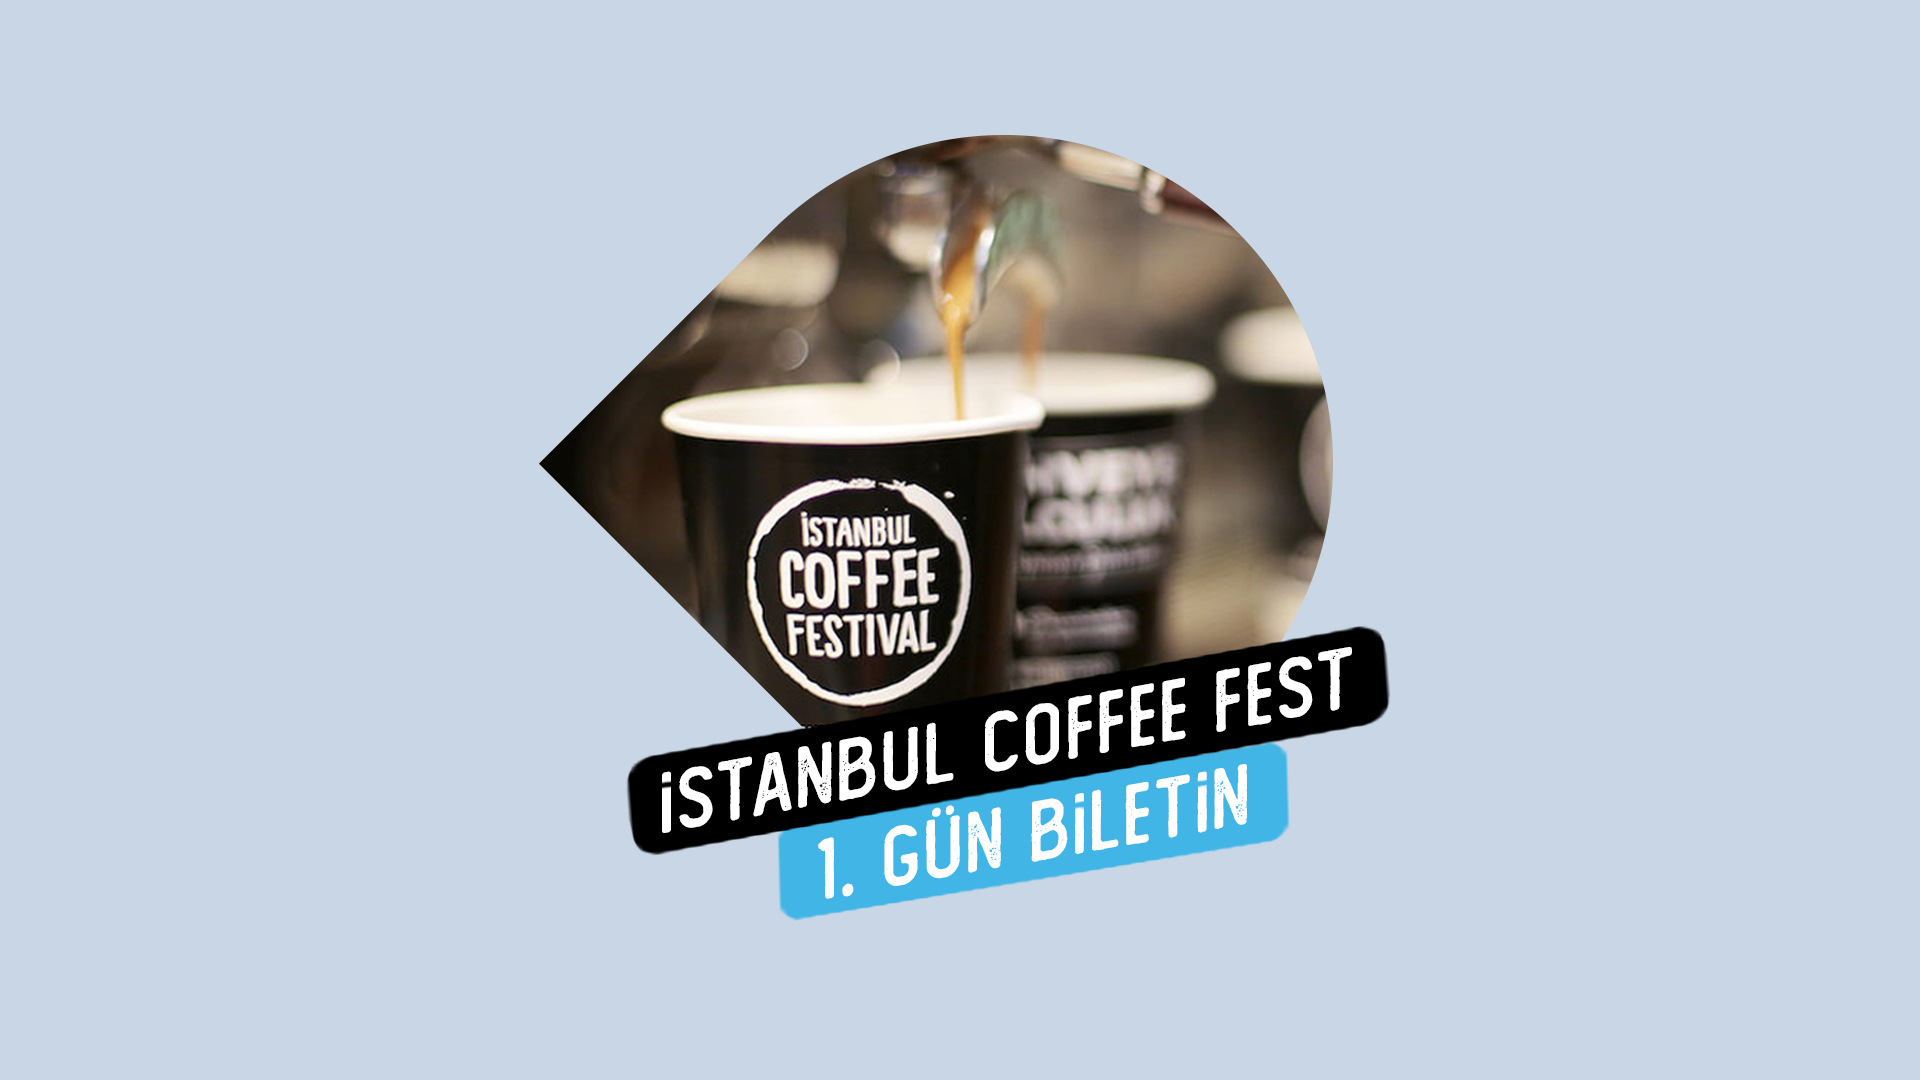 BILET Token Kilitle, İstanbul Coffee Festivali 1. Gün Katılım Biletine hemen sahip ol!